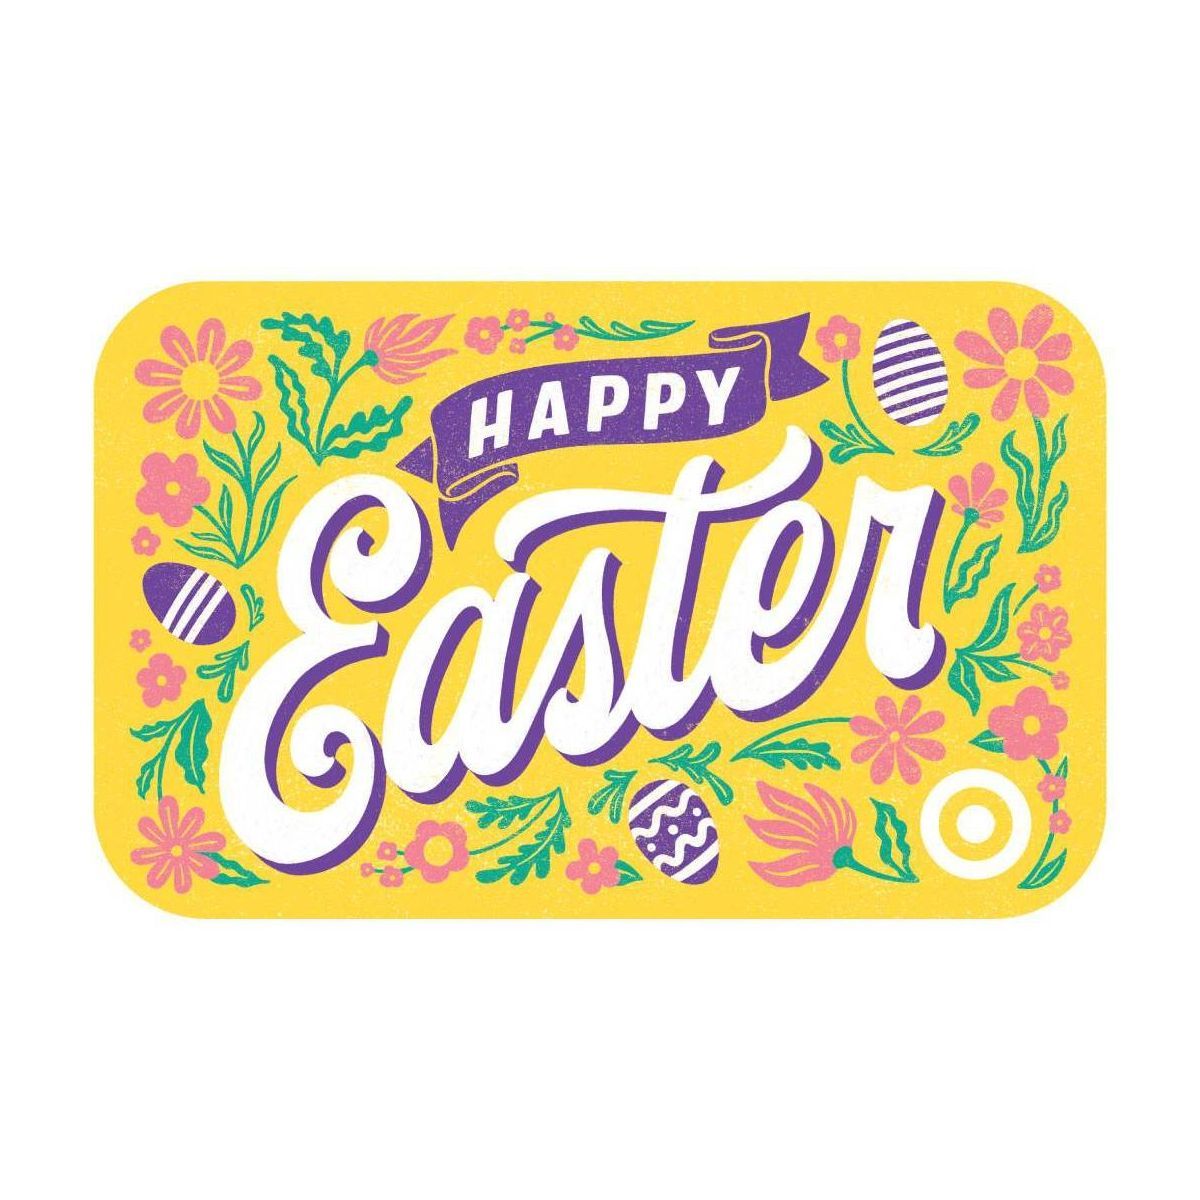 Happy Easter Target GiftCard | Target